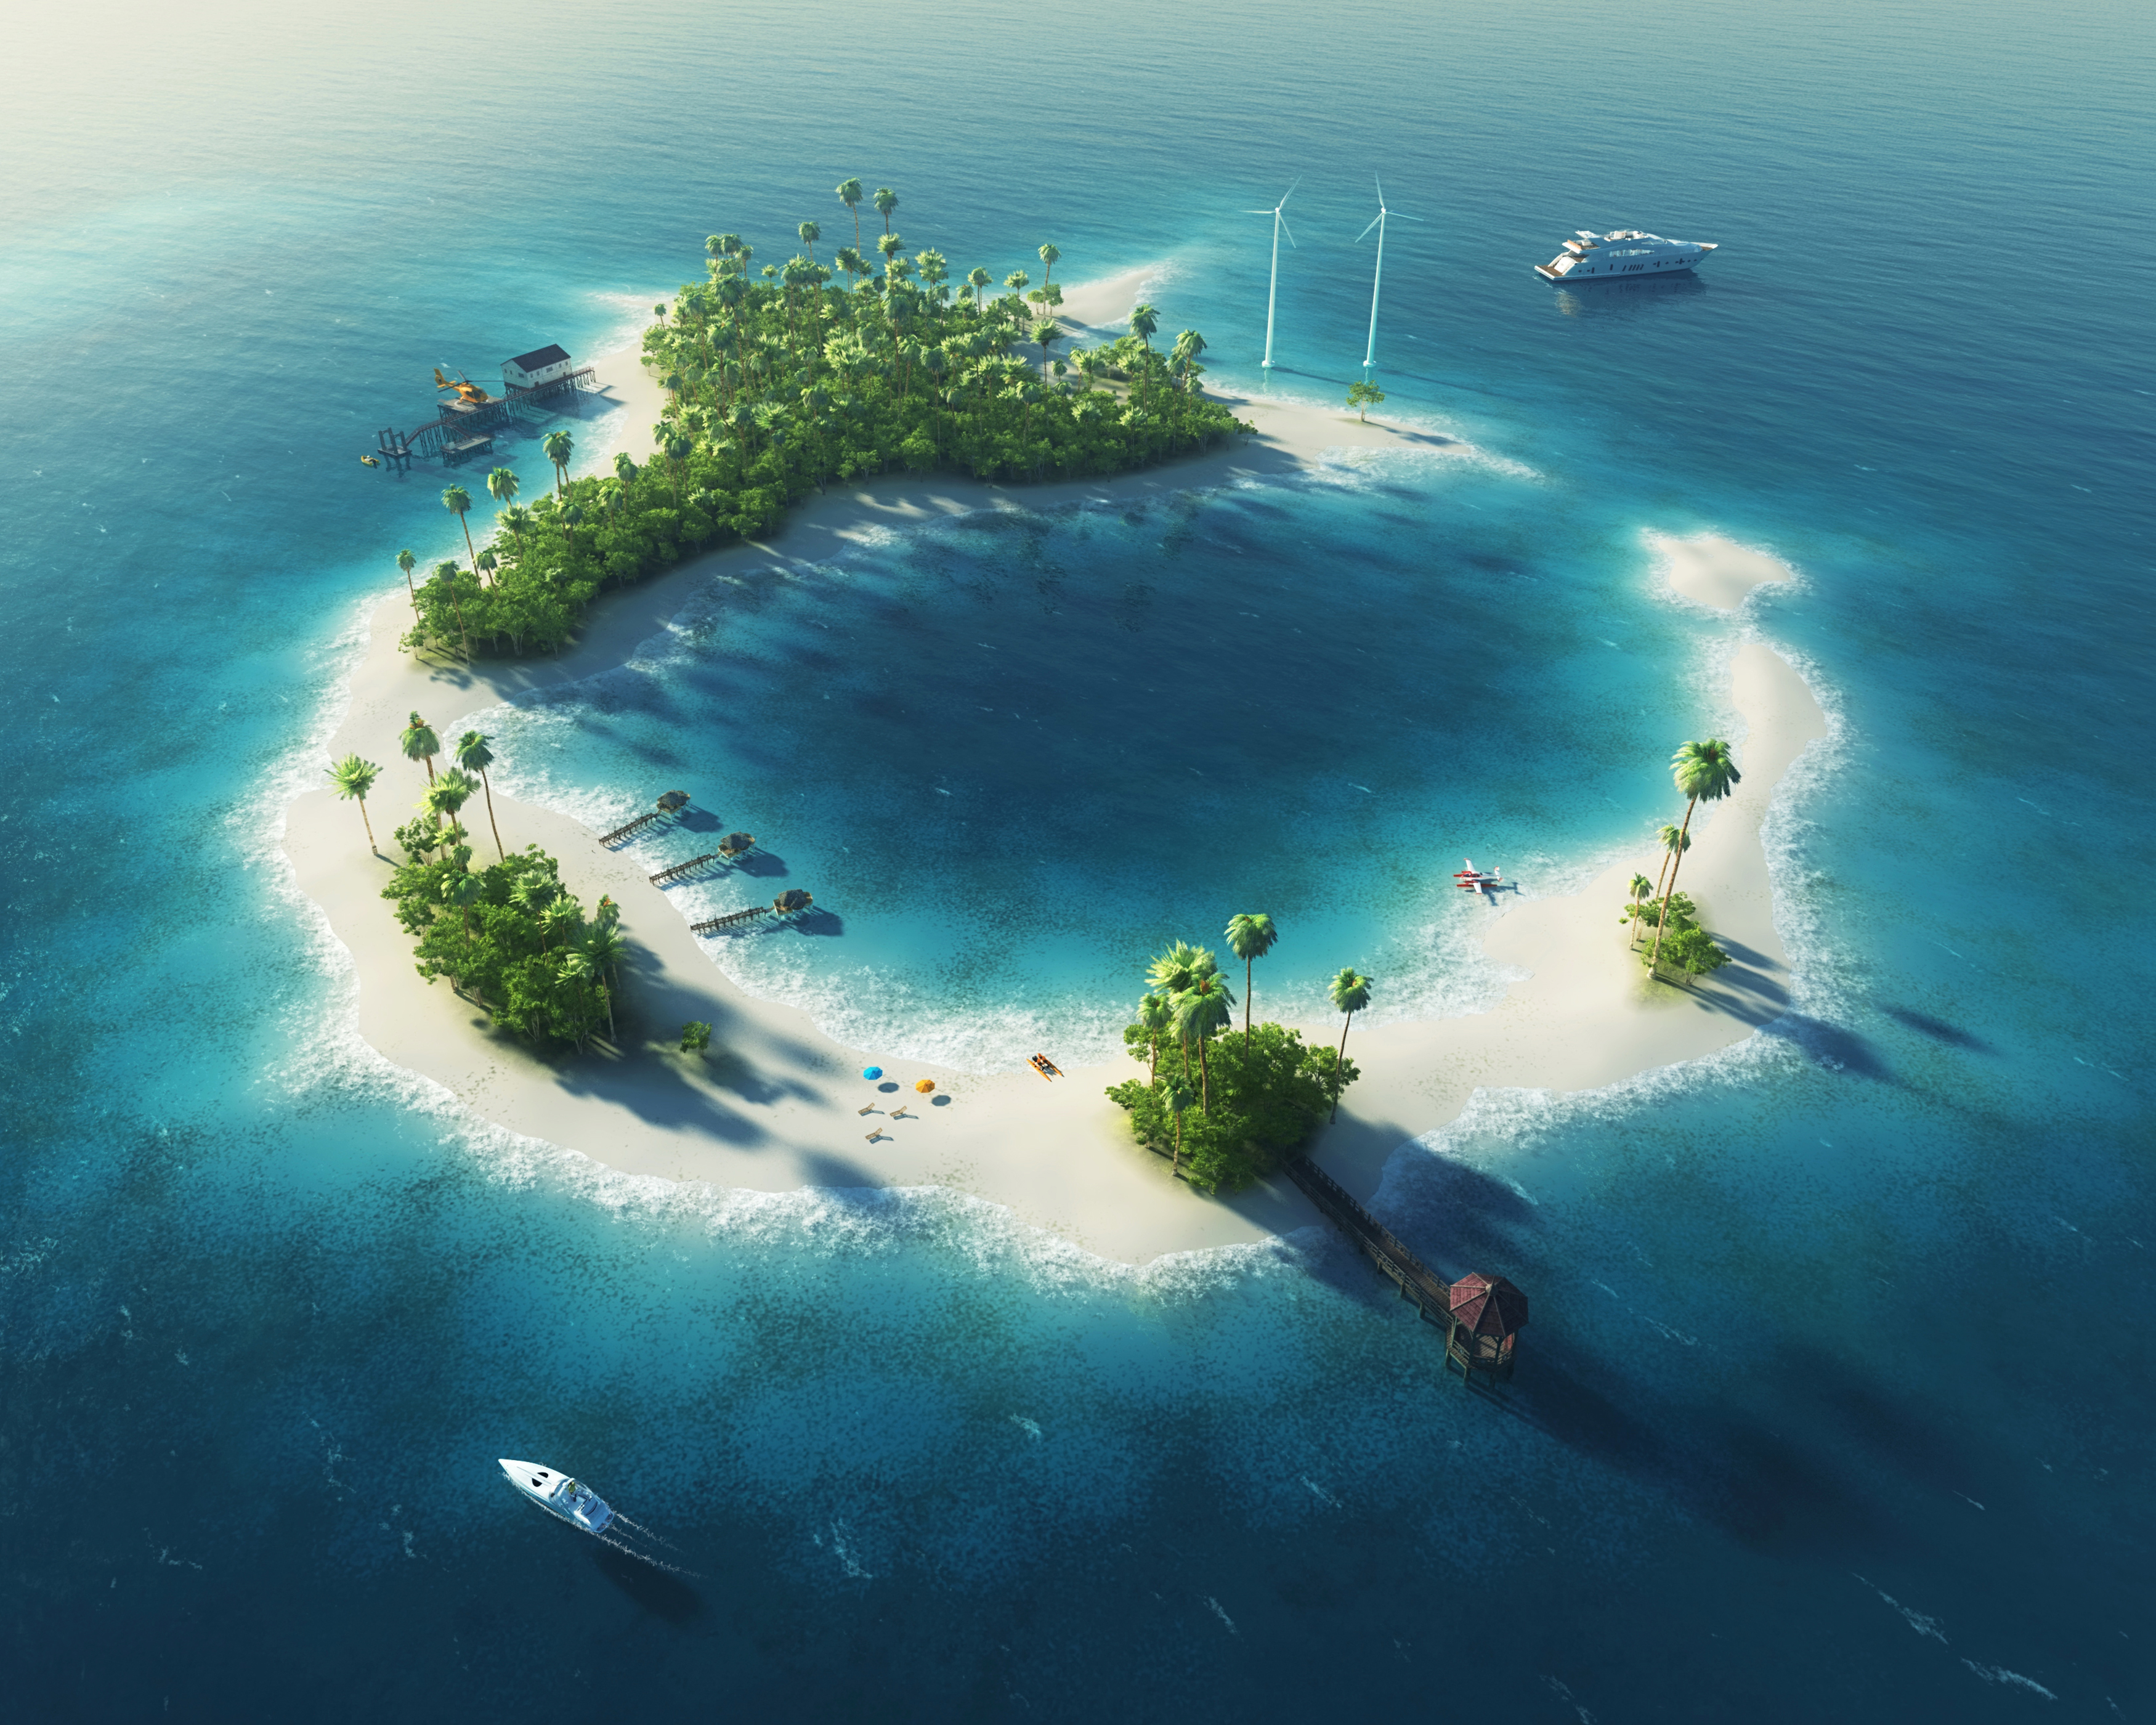 Скачать обои бесплатно Океан, Лодка, Остров, Мальдивы, Художественные картинка на рабочий стол ПК